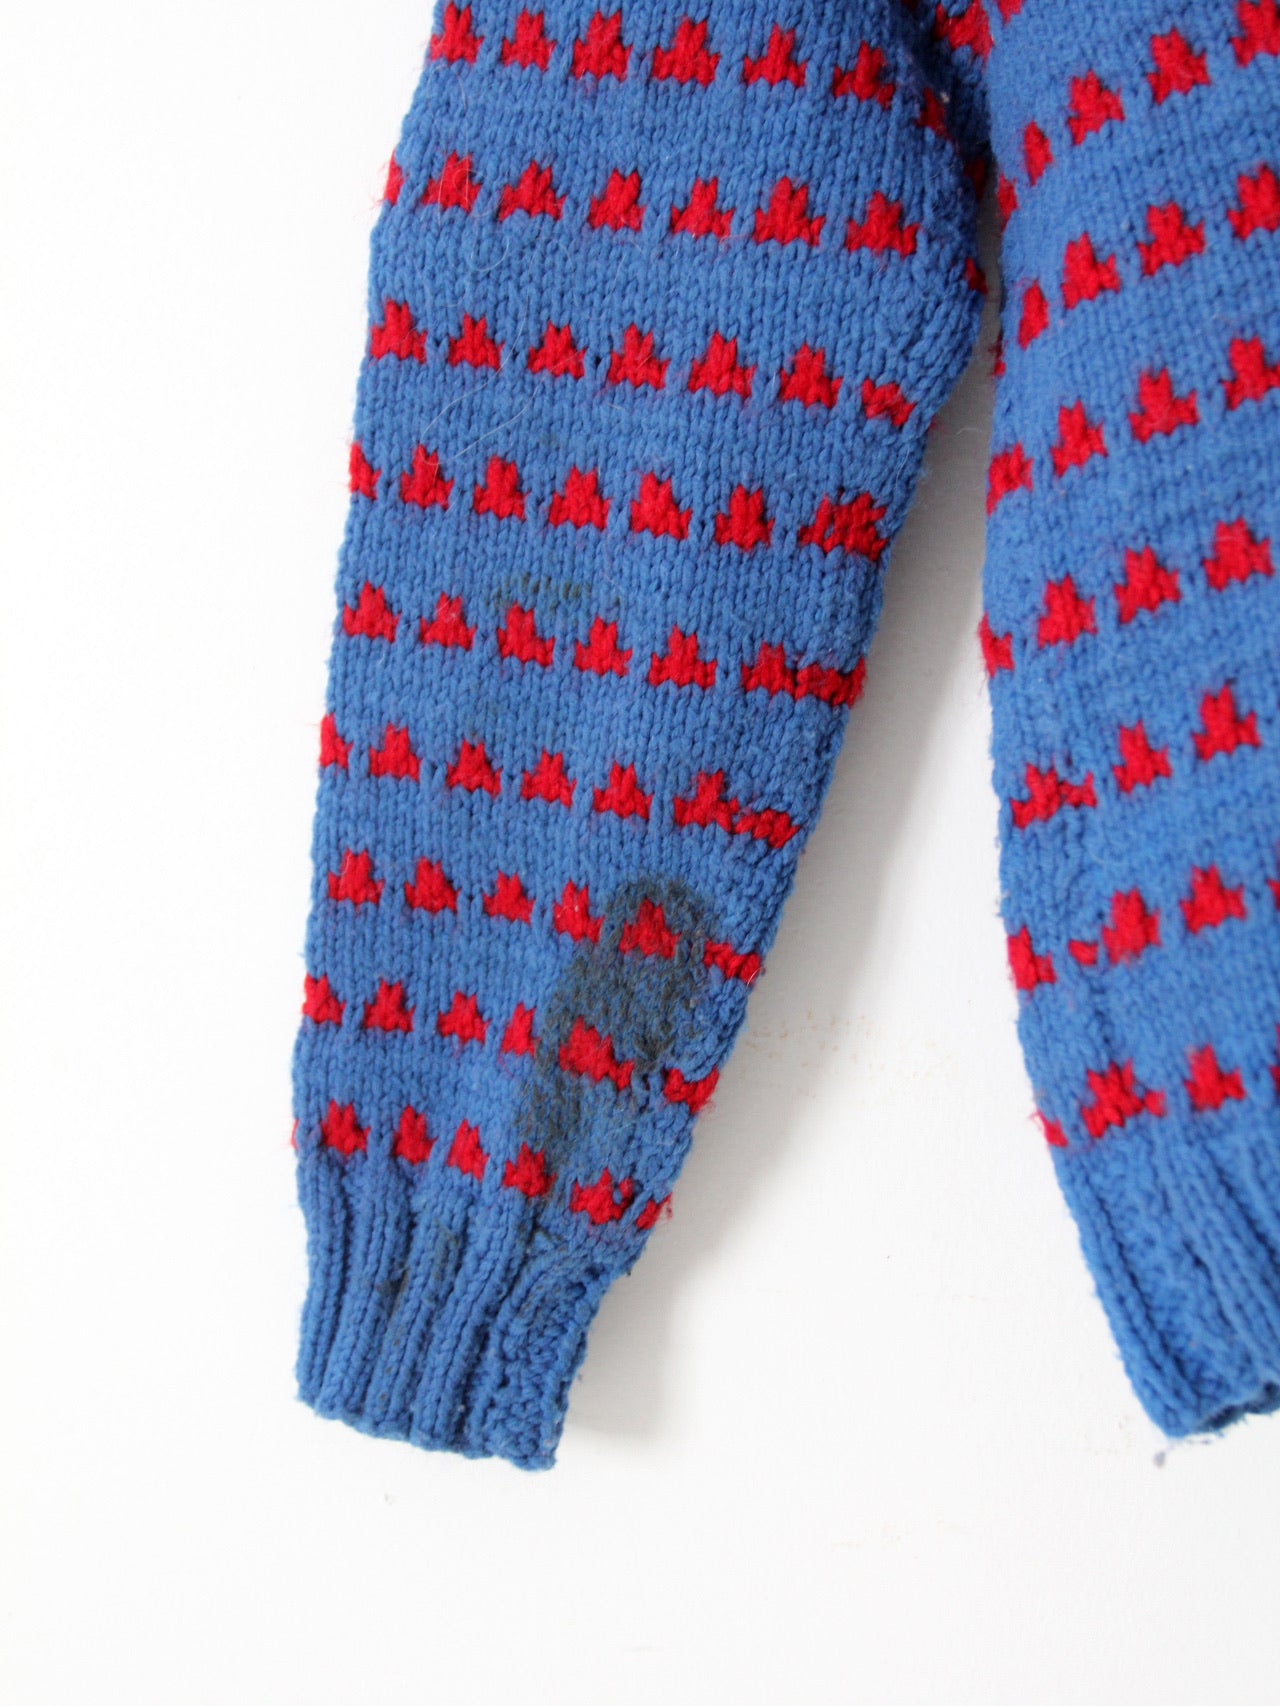 vintage hand knit v-neck sweater